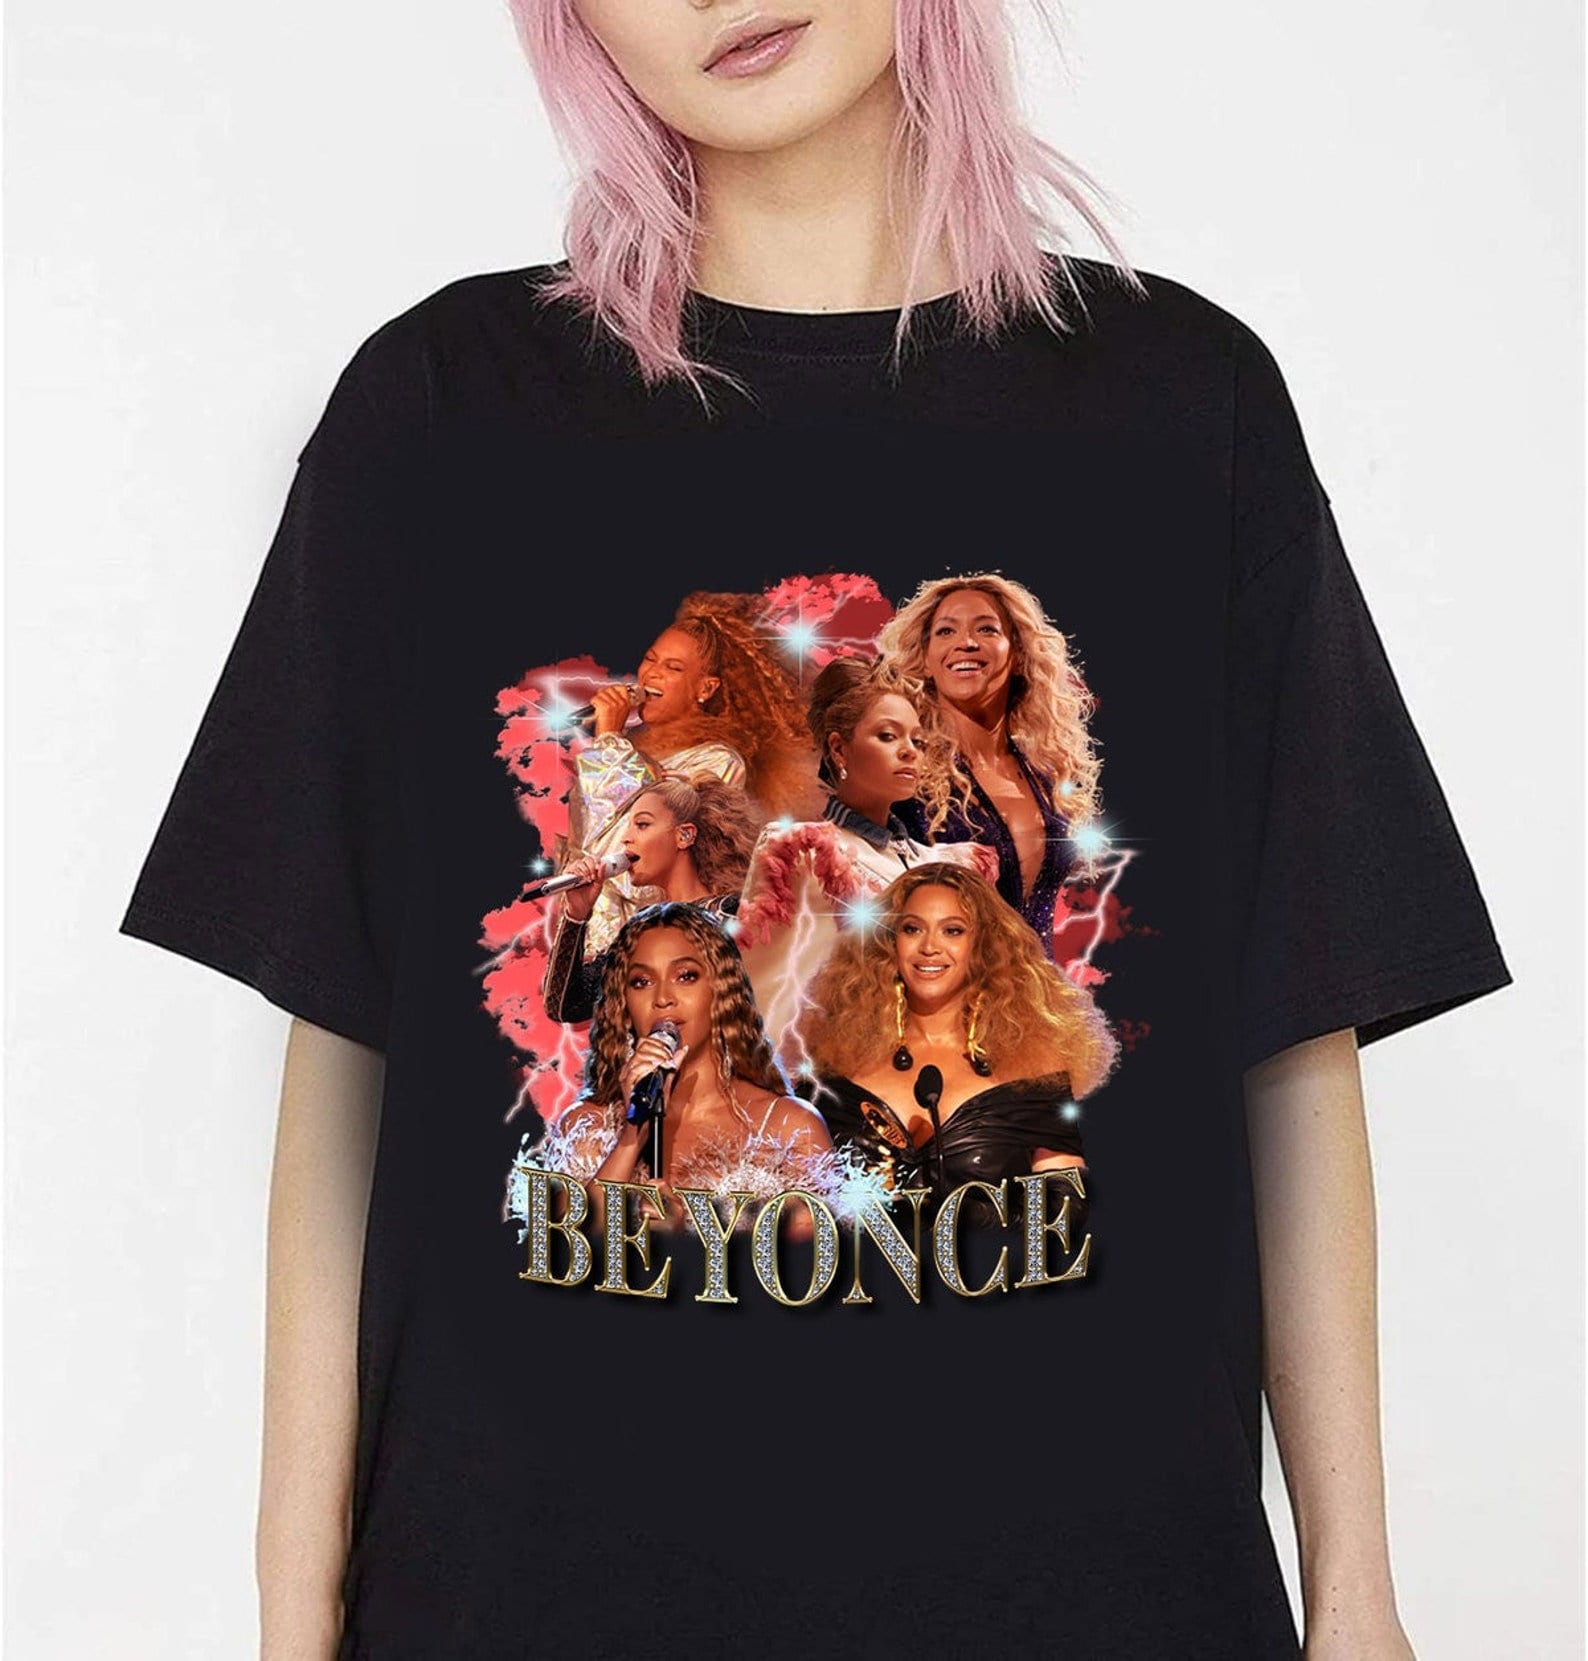 Discover Renaissance Beyoncé Vintage 90er Jahre T-Shirt